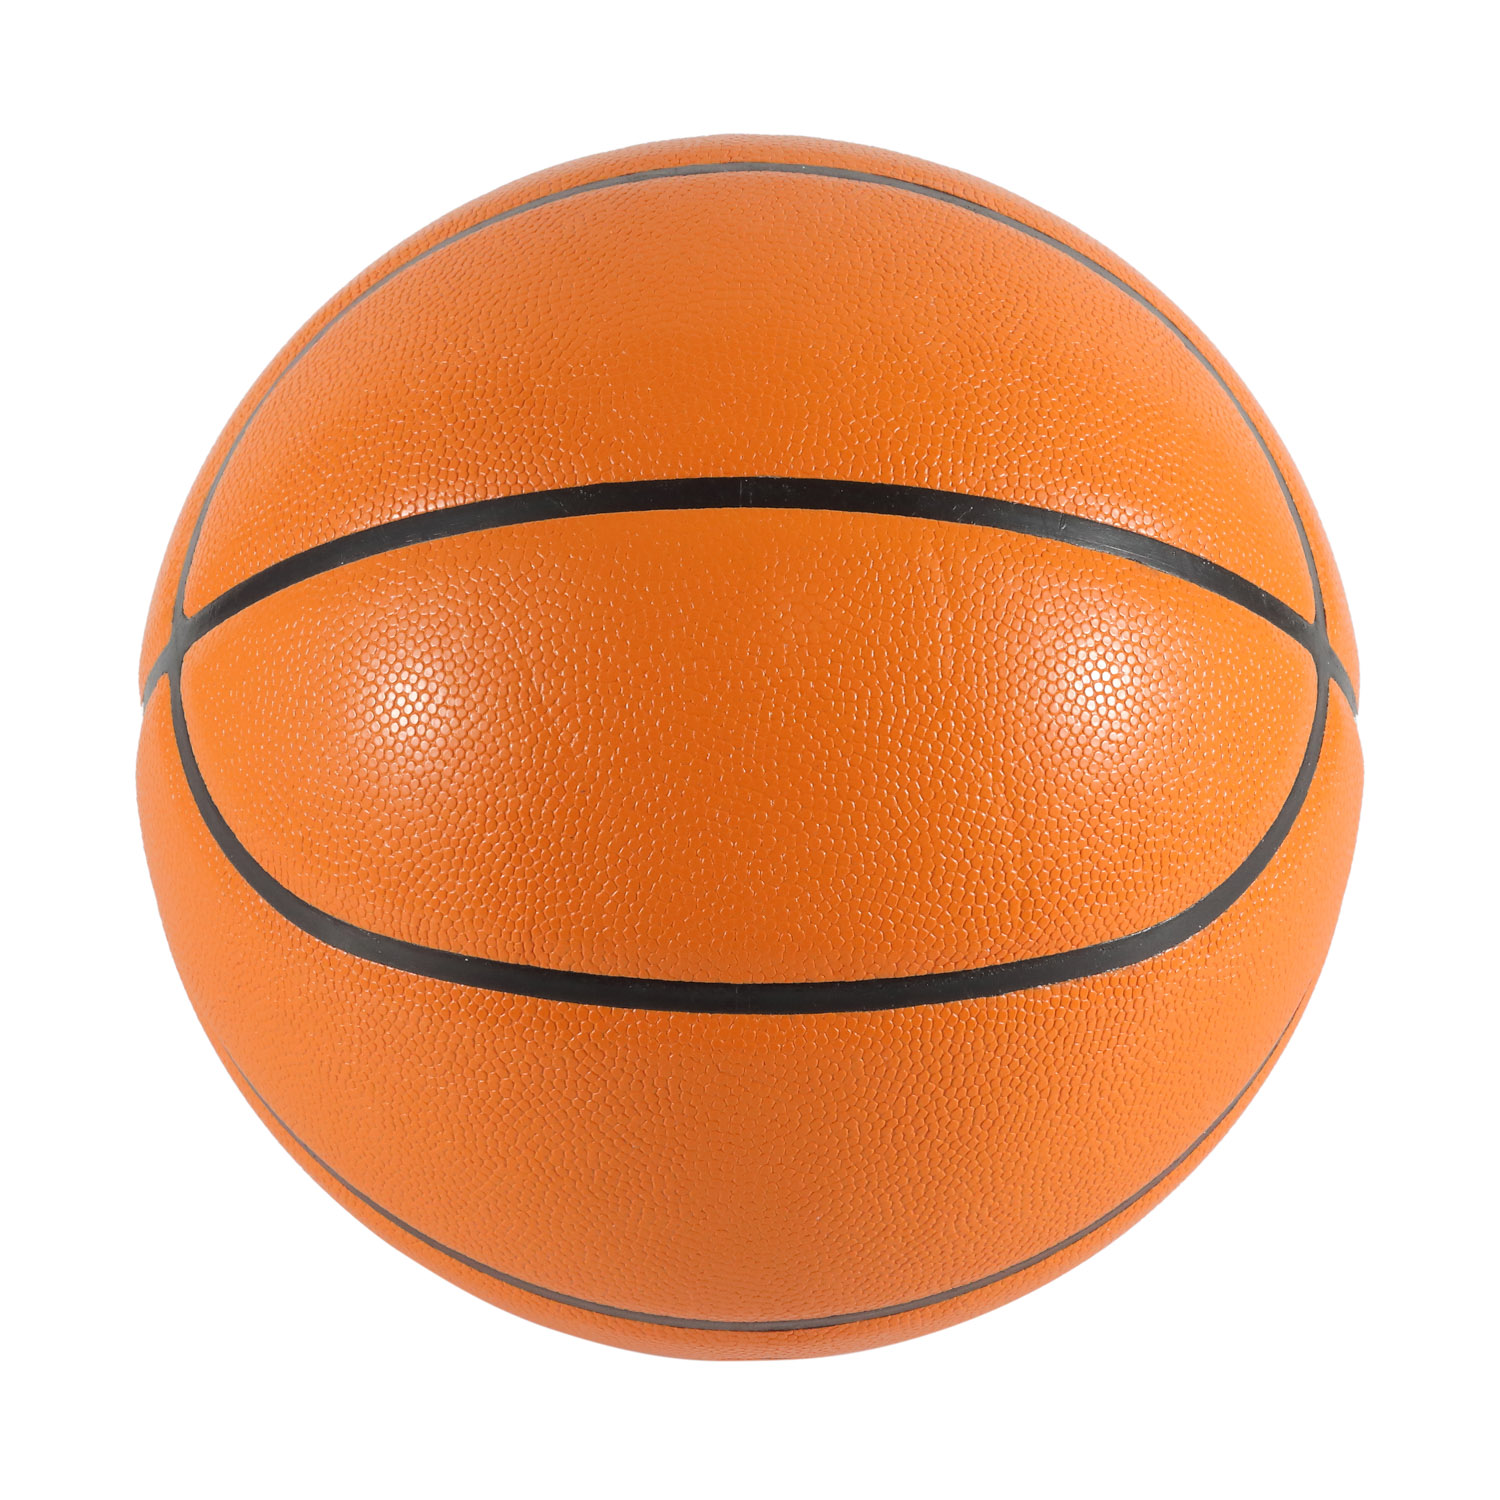 PVC-laminierter Basketball in offizieller Größe in Braun für drinnen und draußen